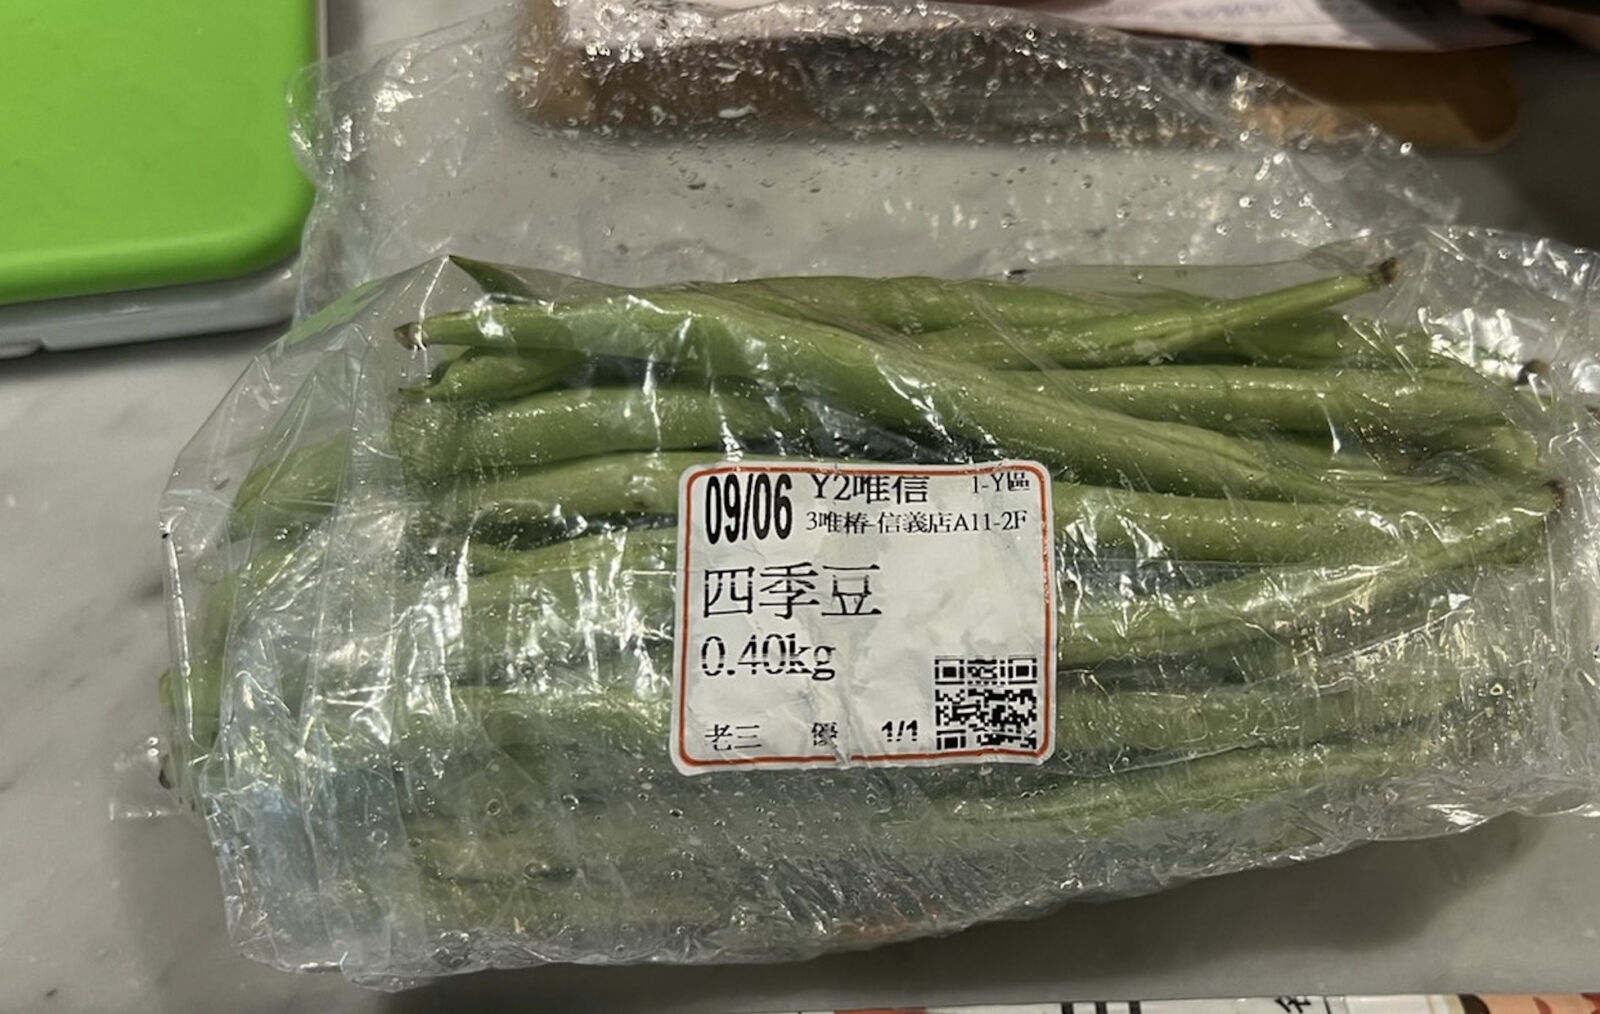 蔬食名店全出包！ 「果然匯」、「Miacucina」遭逮蔬果農藥超標下架 11